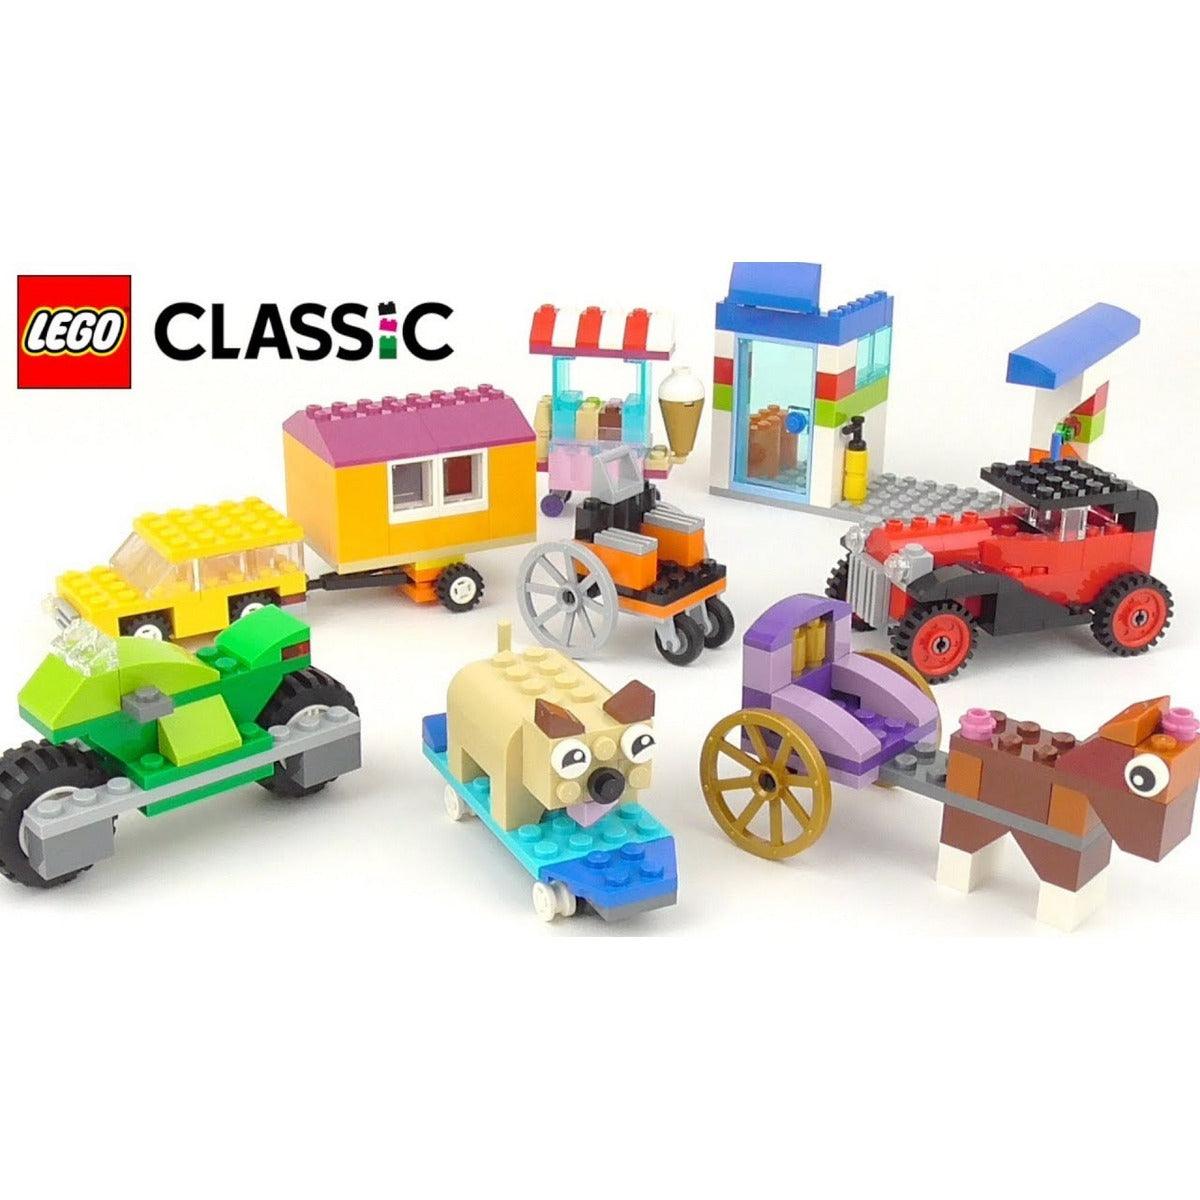 LEGO Classic Bricks on a Roll